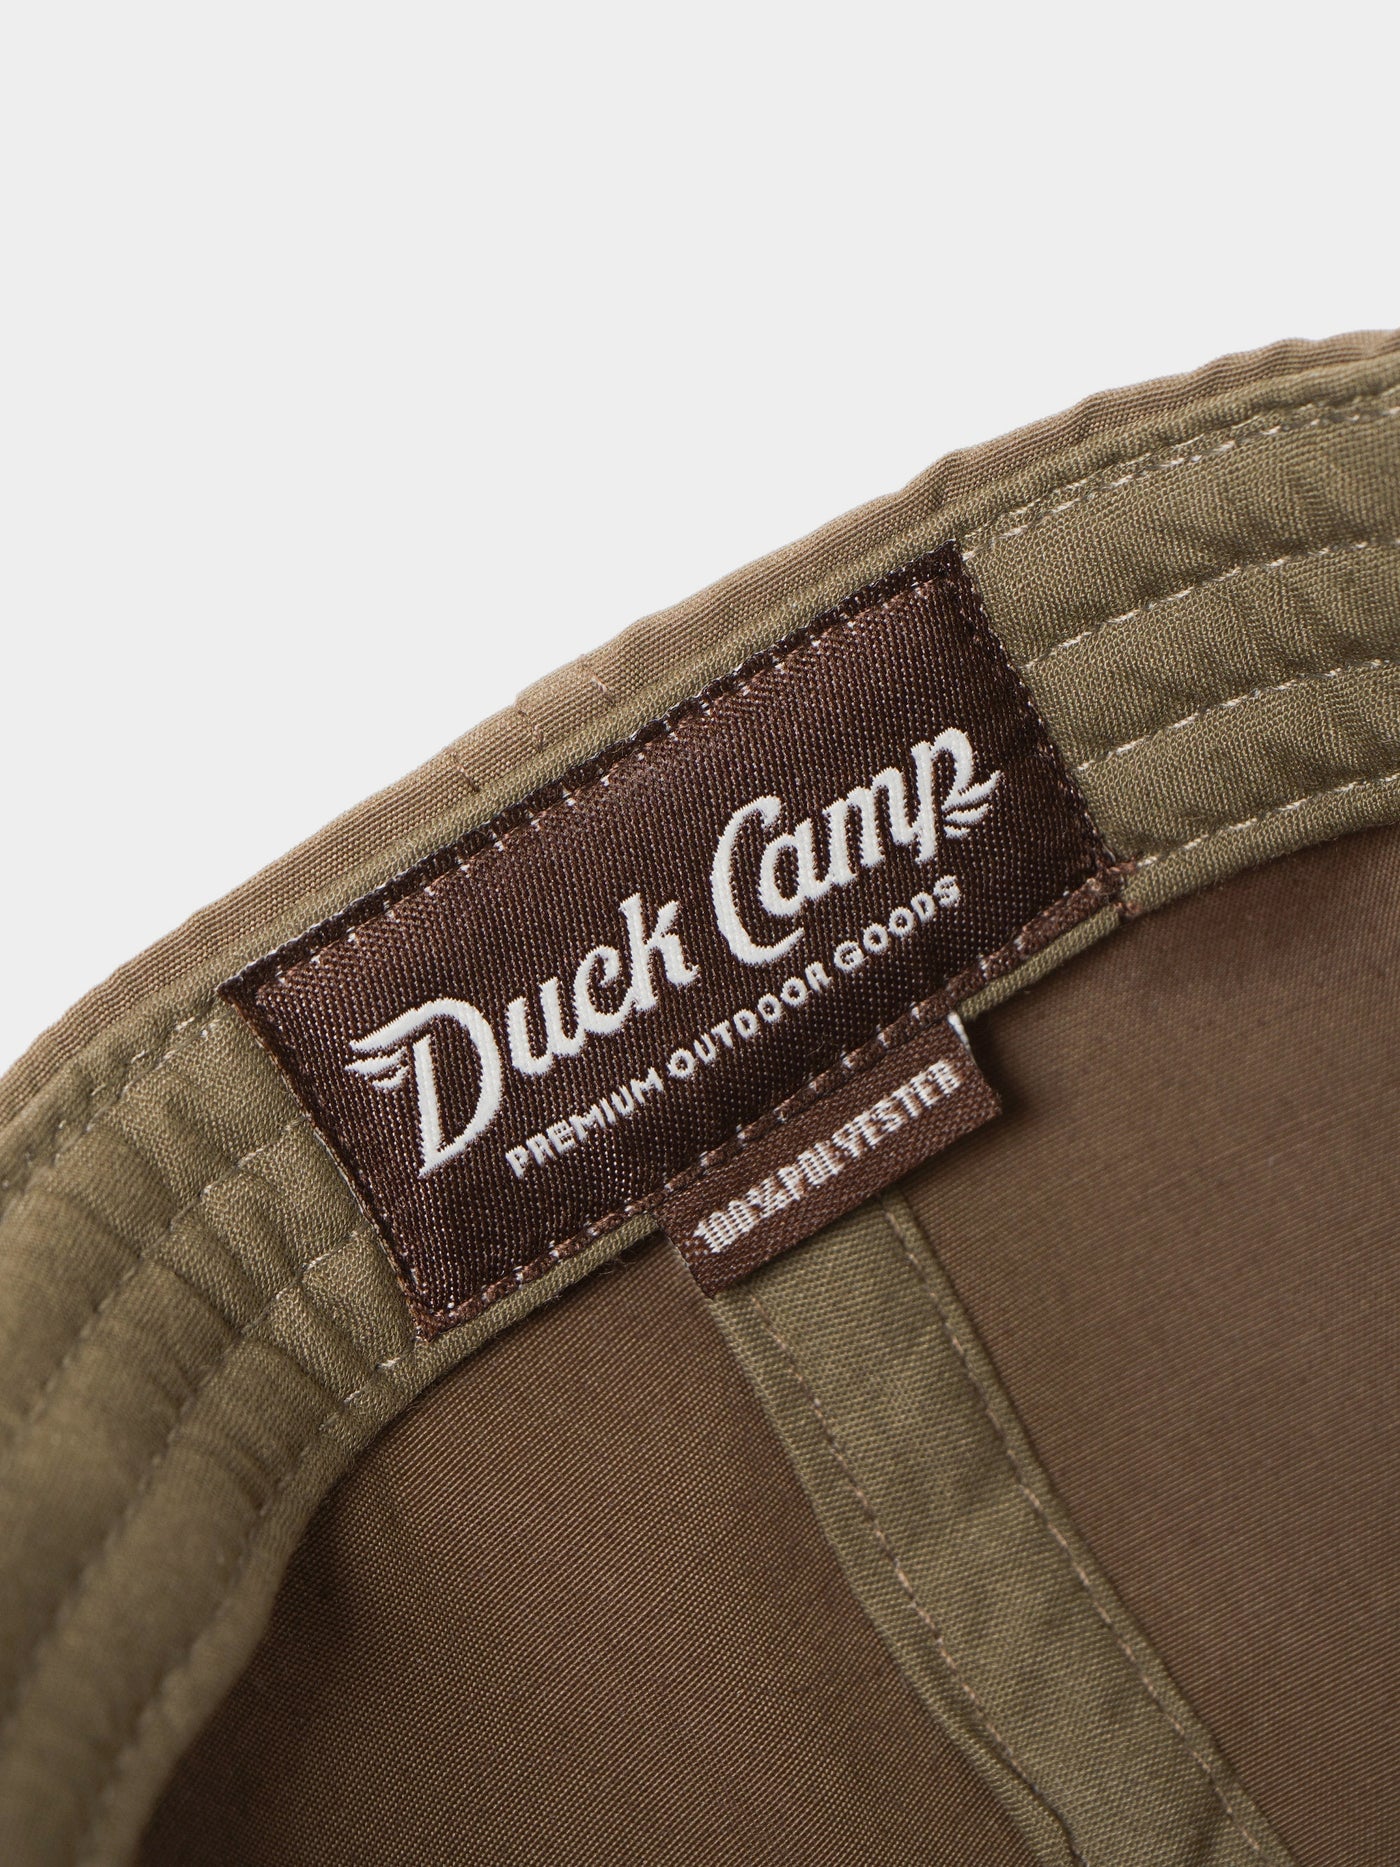 Men's Hats – Duck Camp